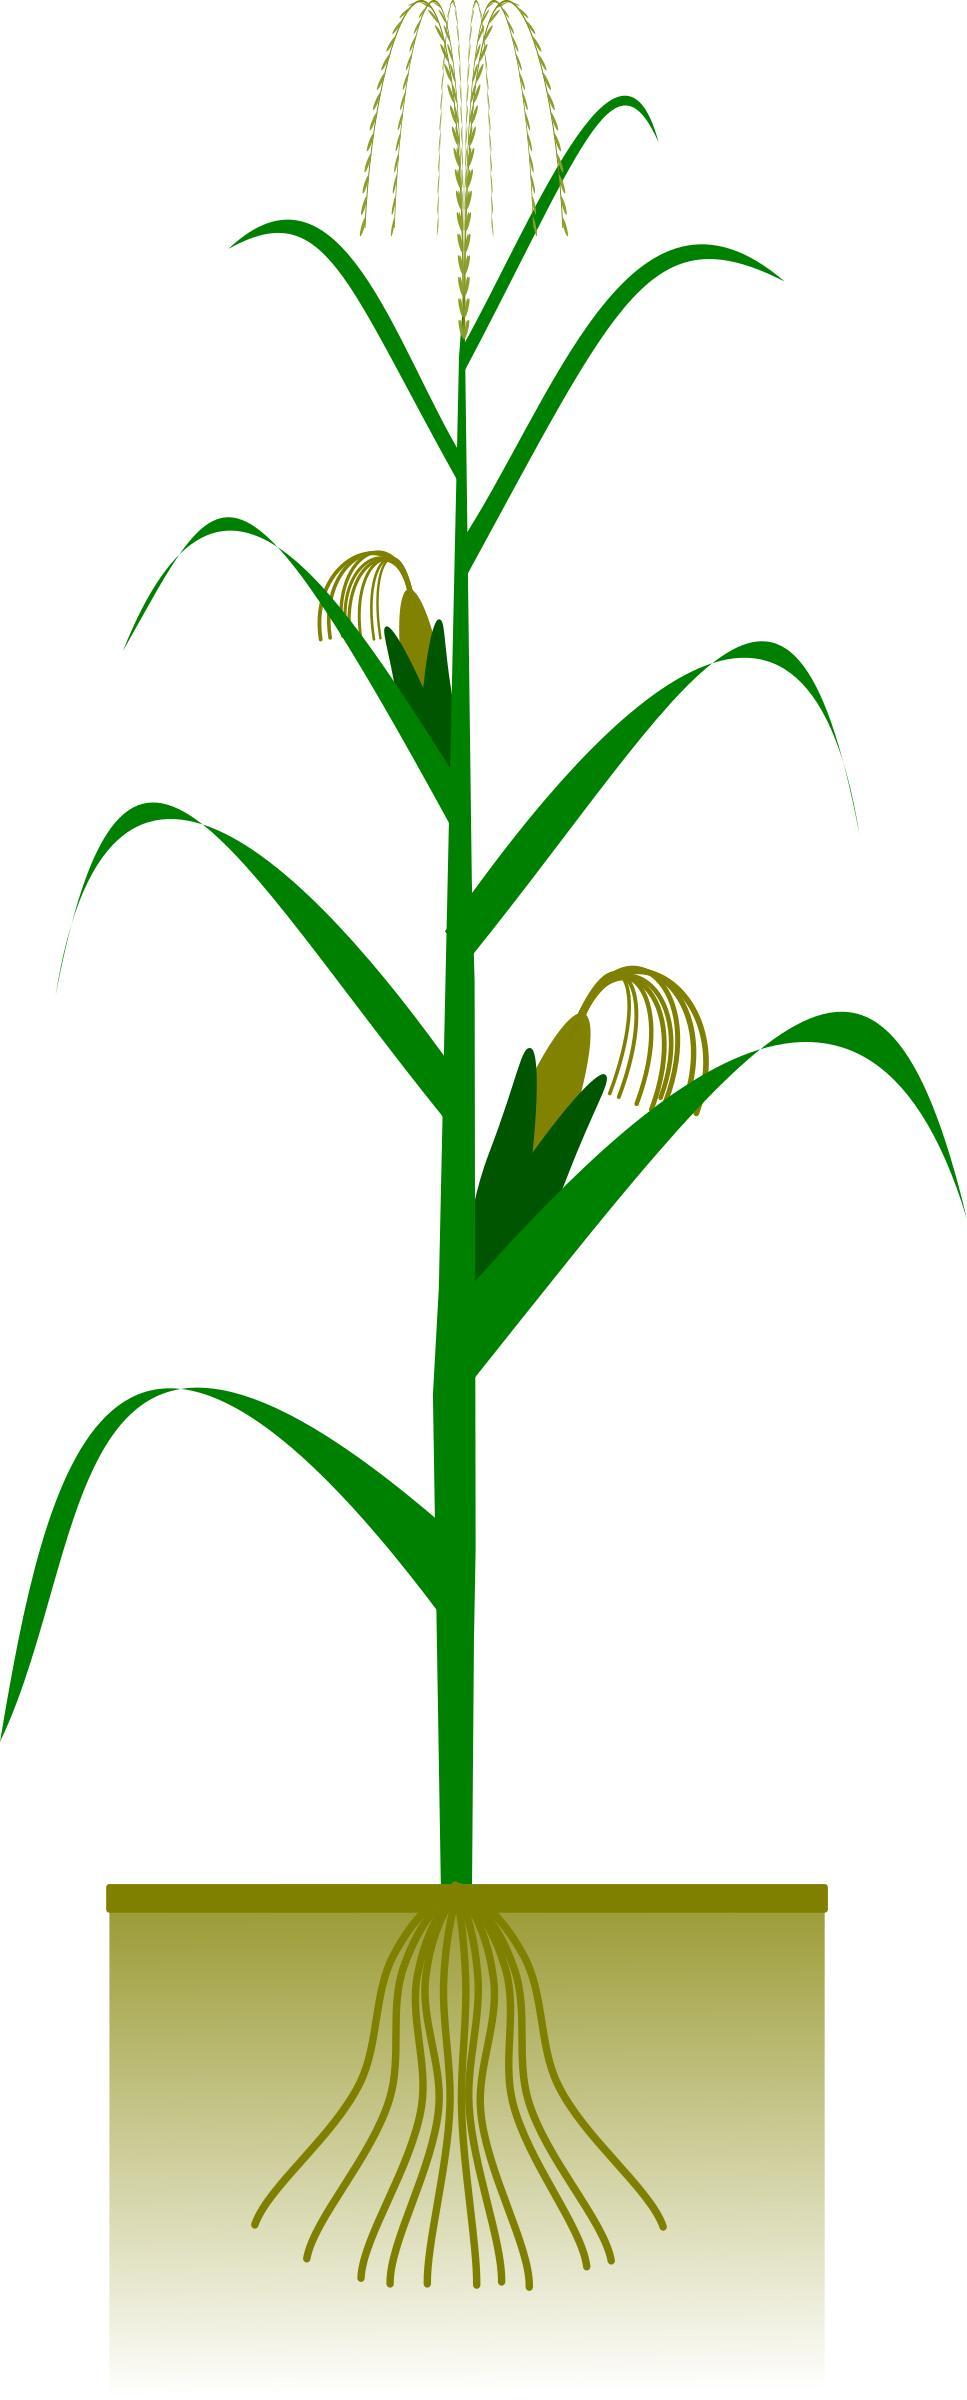 Maize plant png transparent